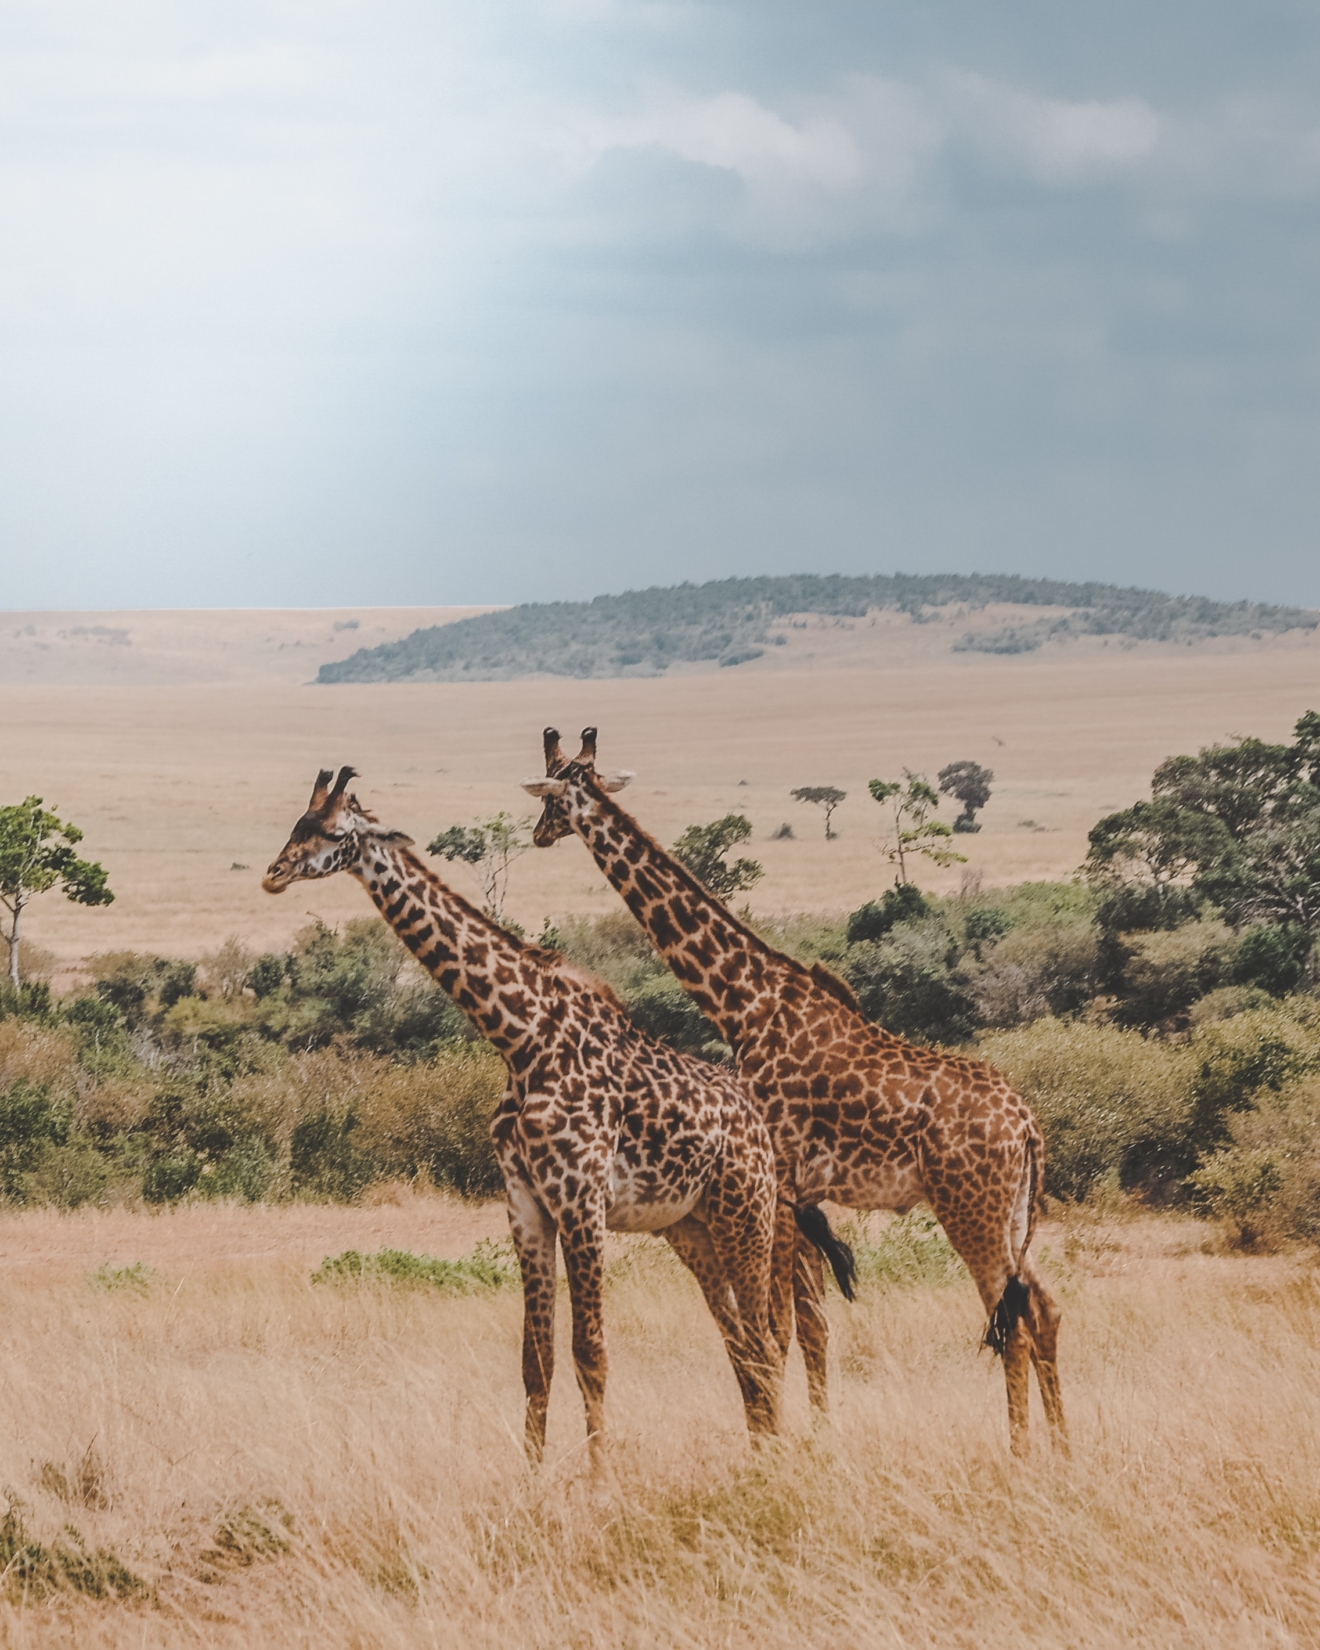 A pair of giraffes in an open grass field in Africa 